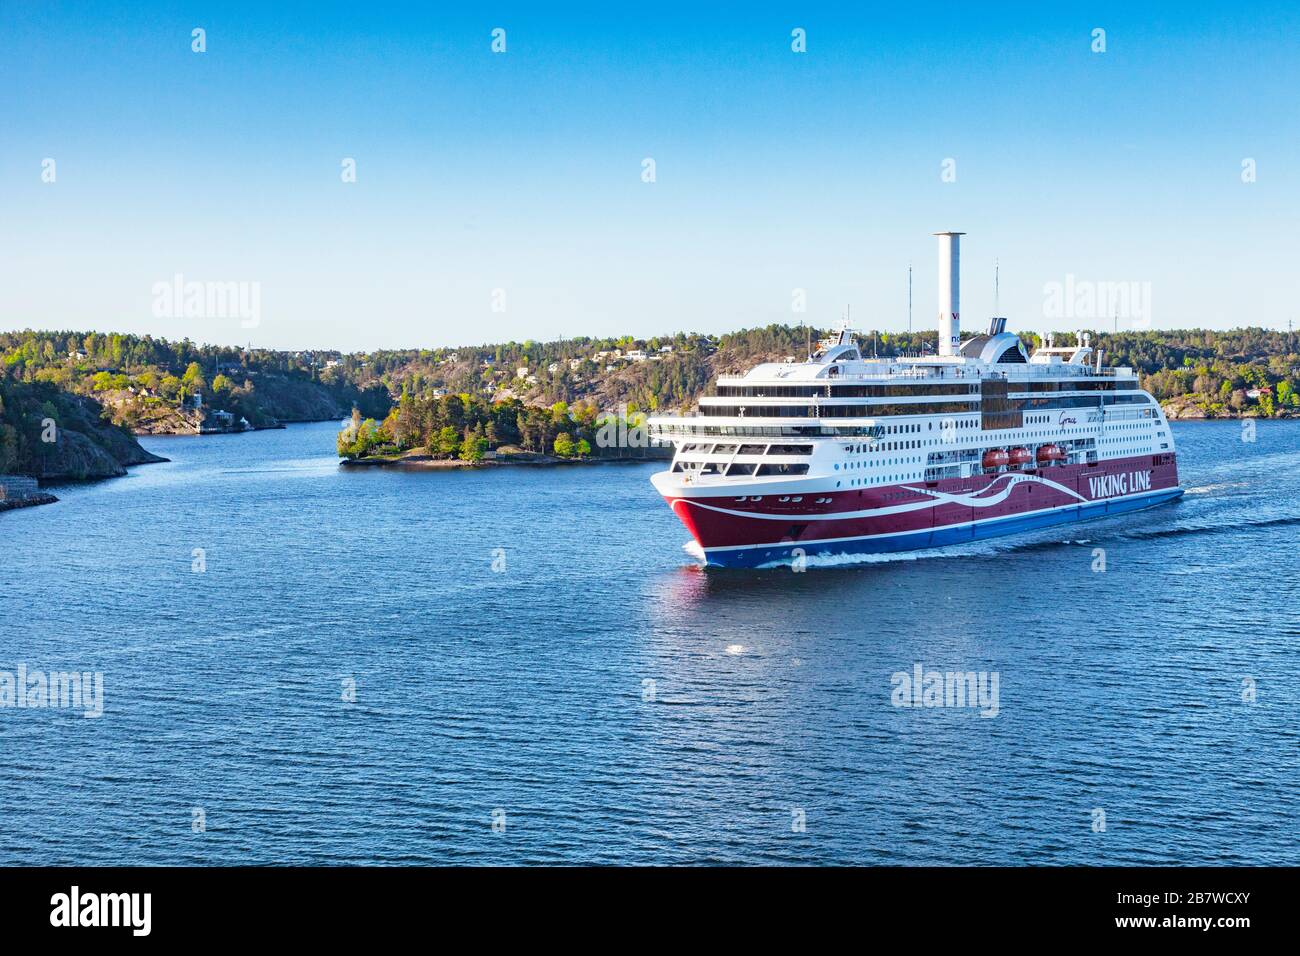 16 September 2018: Stockholm, Sweden - Viking Line ferry Grace sails into Stockholm Harbour just after sunrise. Stock Photo